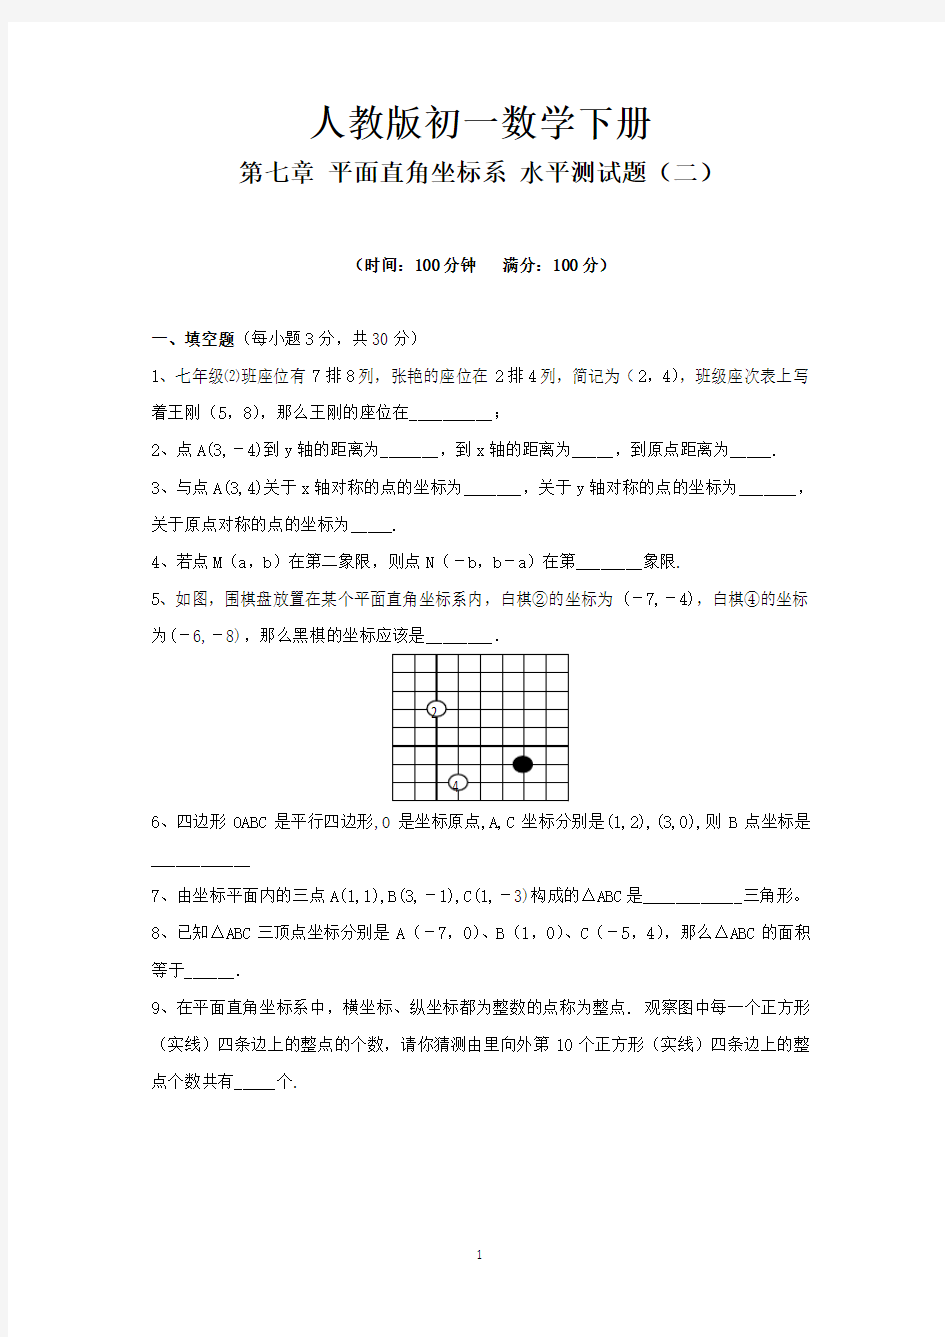 人教版初一数学下册第7章《 平面直角坐标系 综合》单元试卷(详细答案版)